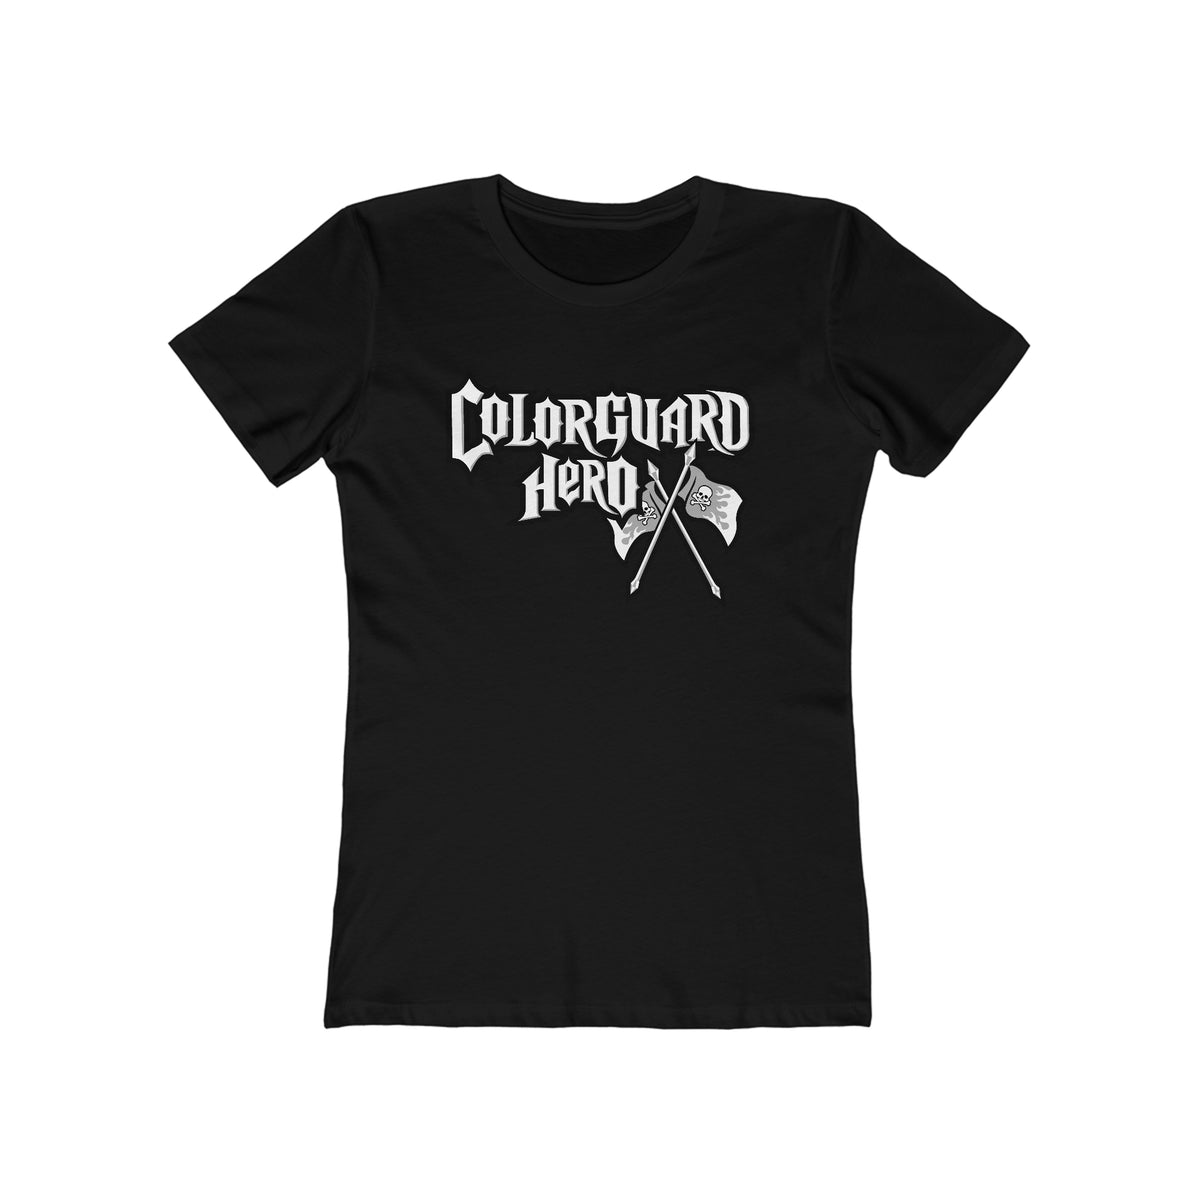 Colorguard hero - Women’s T-Shirt